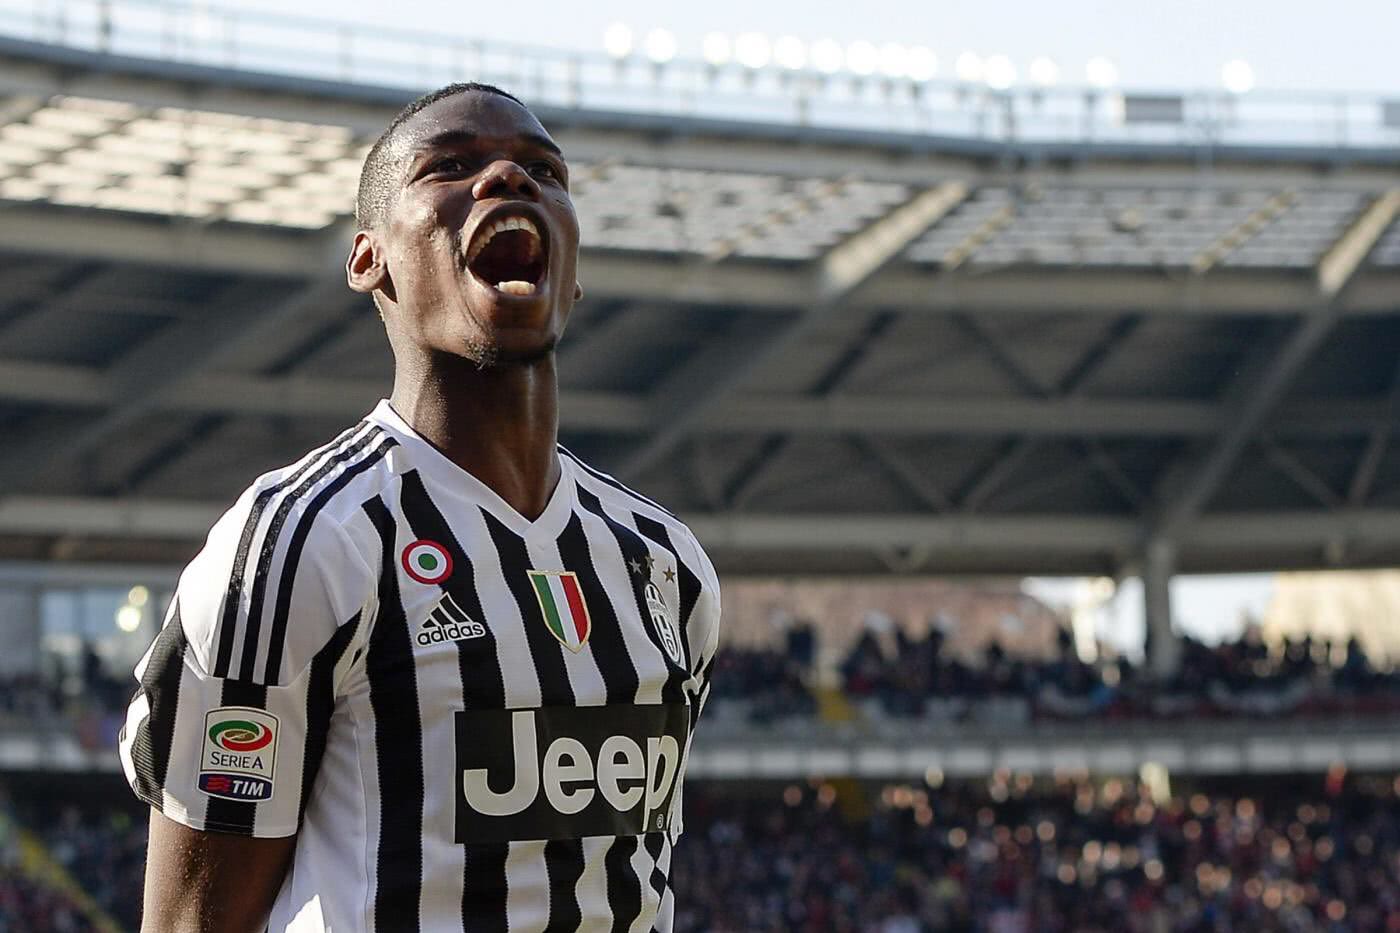 Pogba em passagem pela Juventus comemorando gol